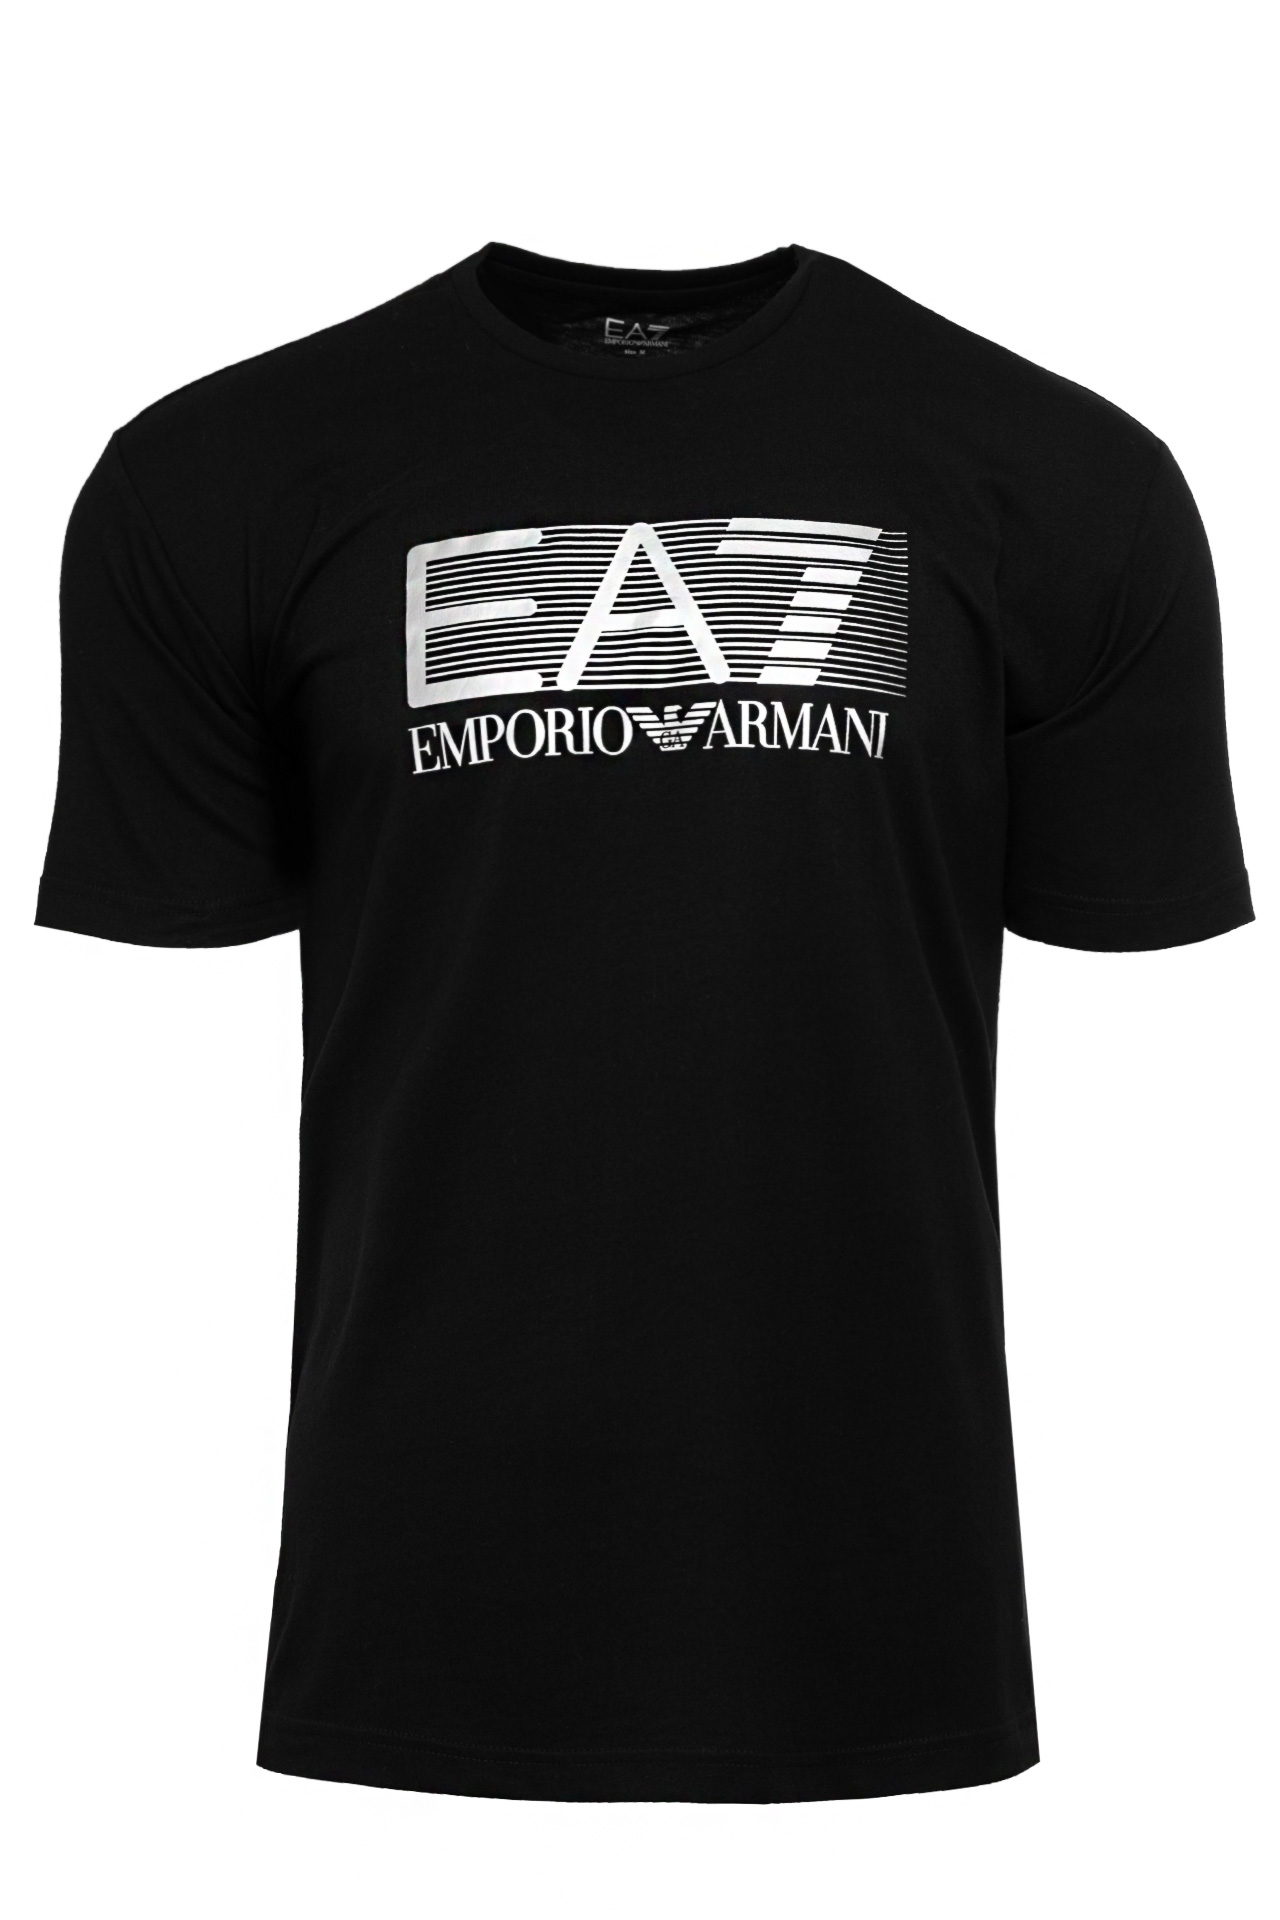 Koszulka męska Emporio Armani 6LPT09-PJ02Z-0200